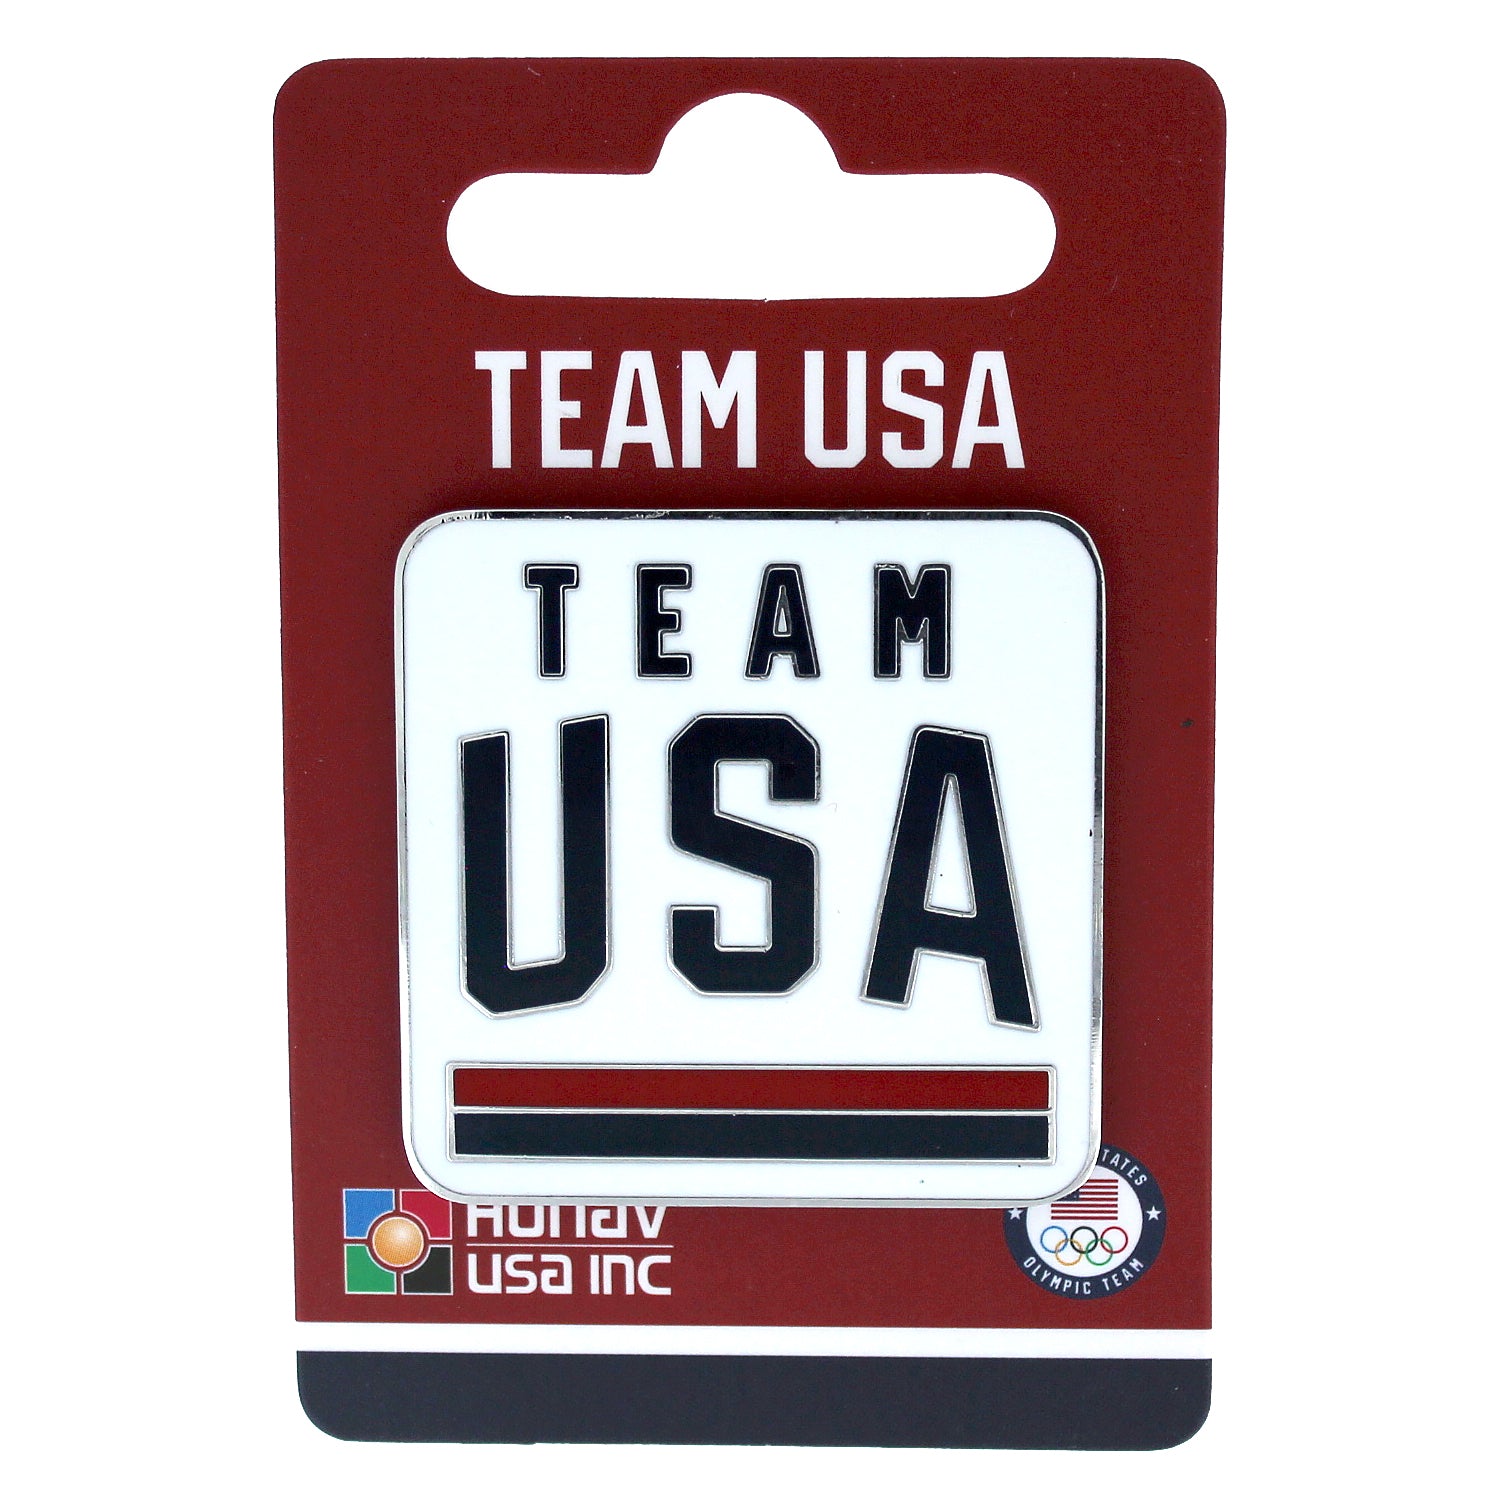 Team USA White Magnet